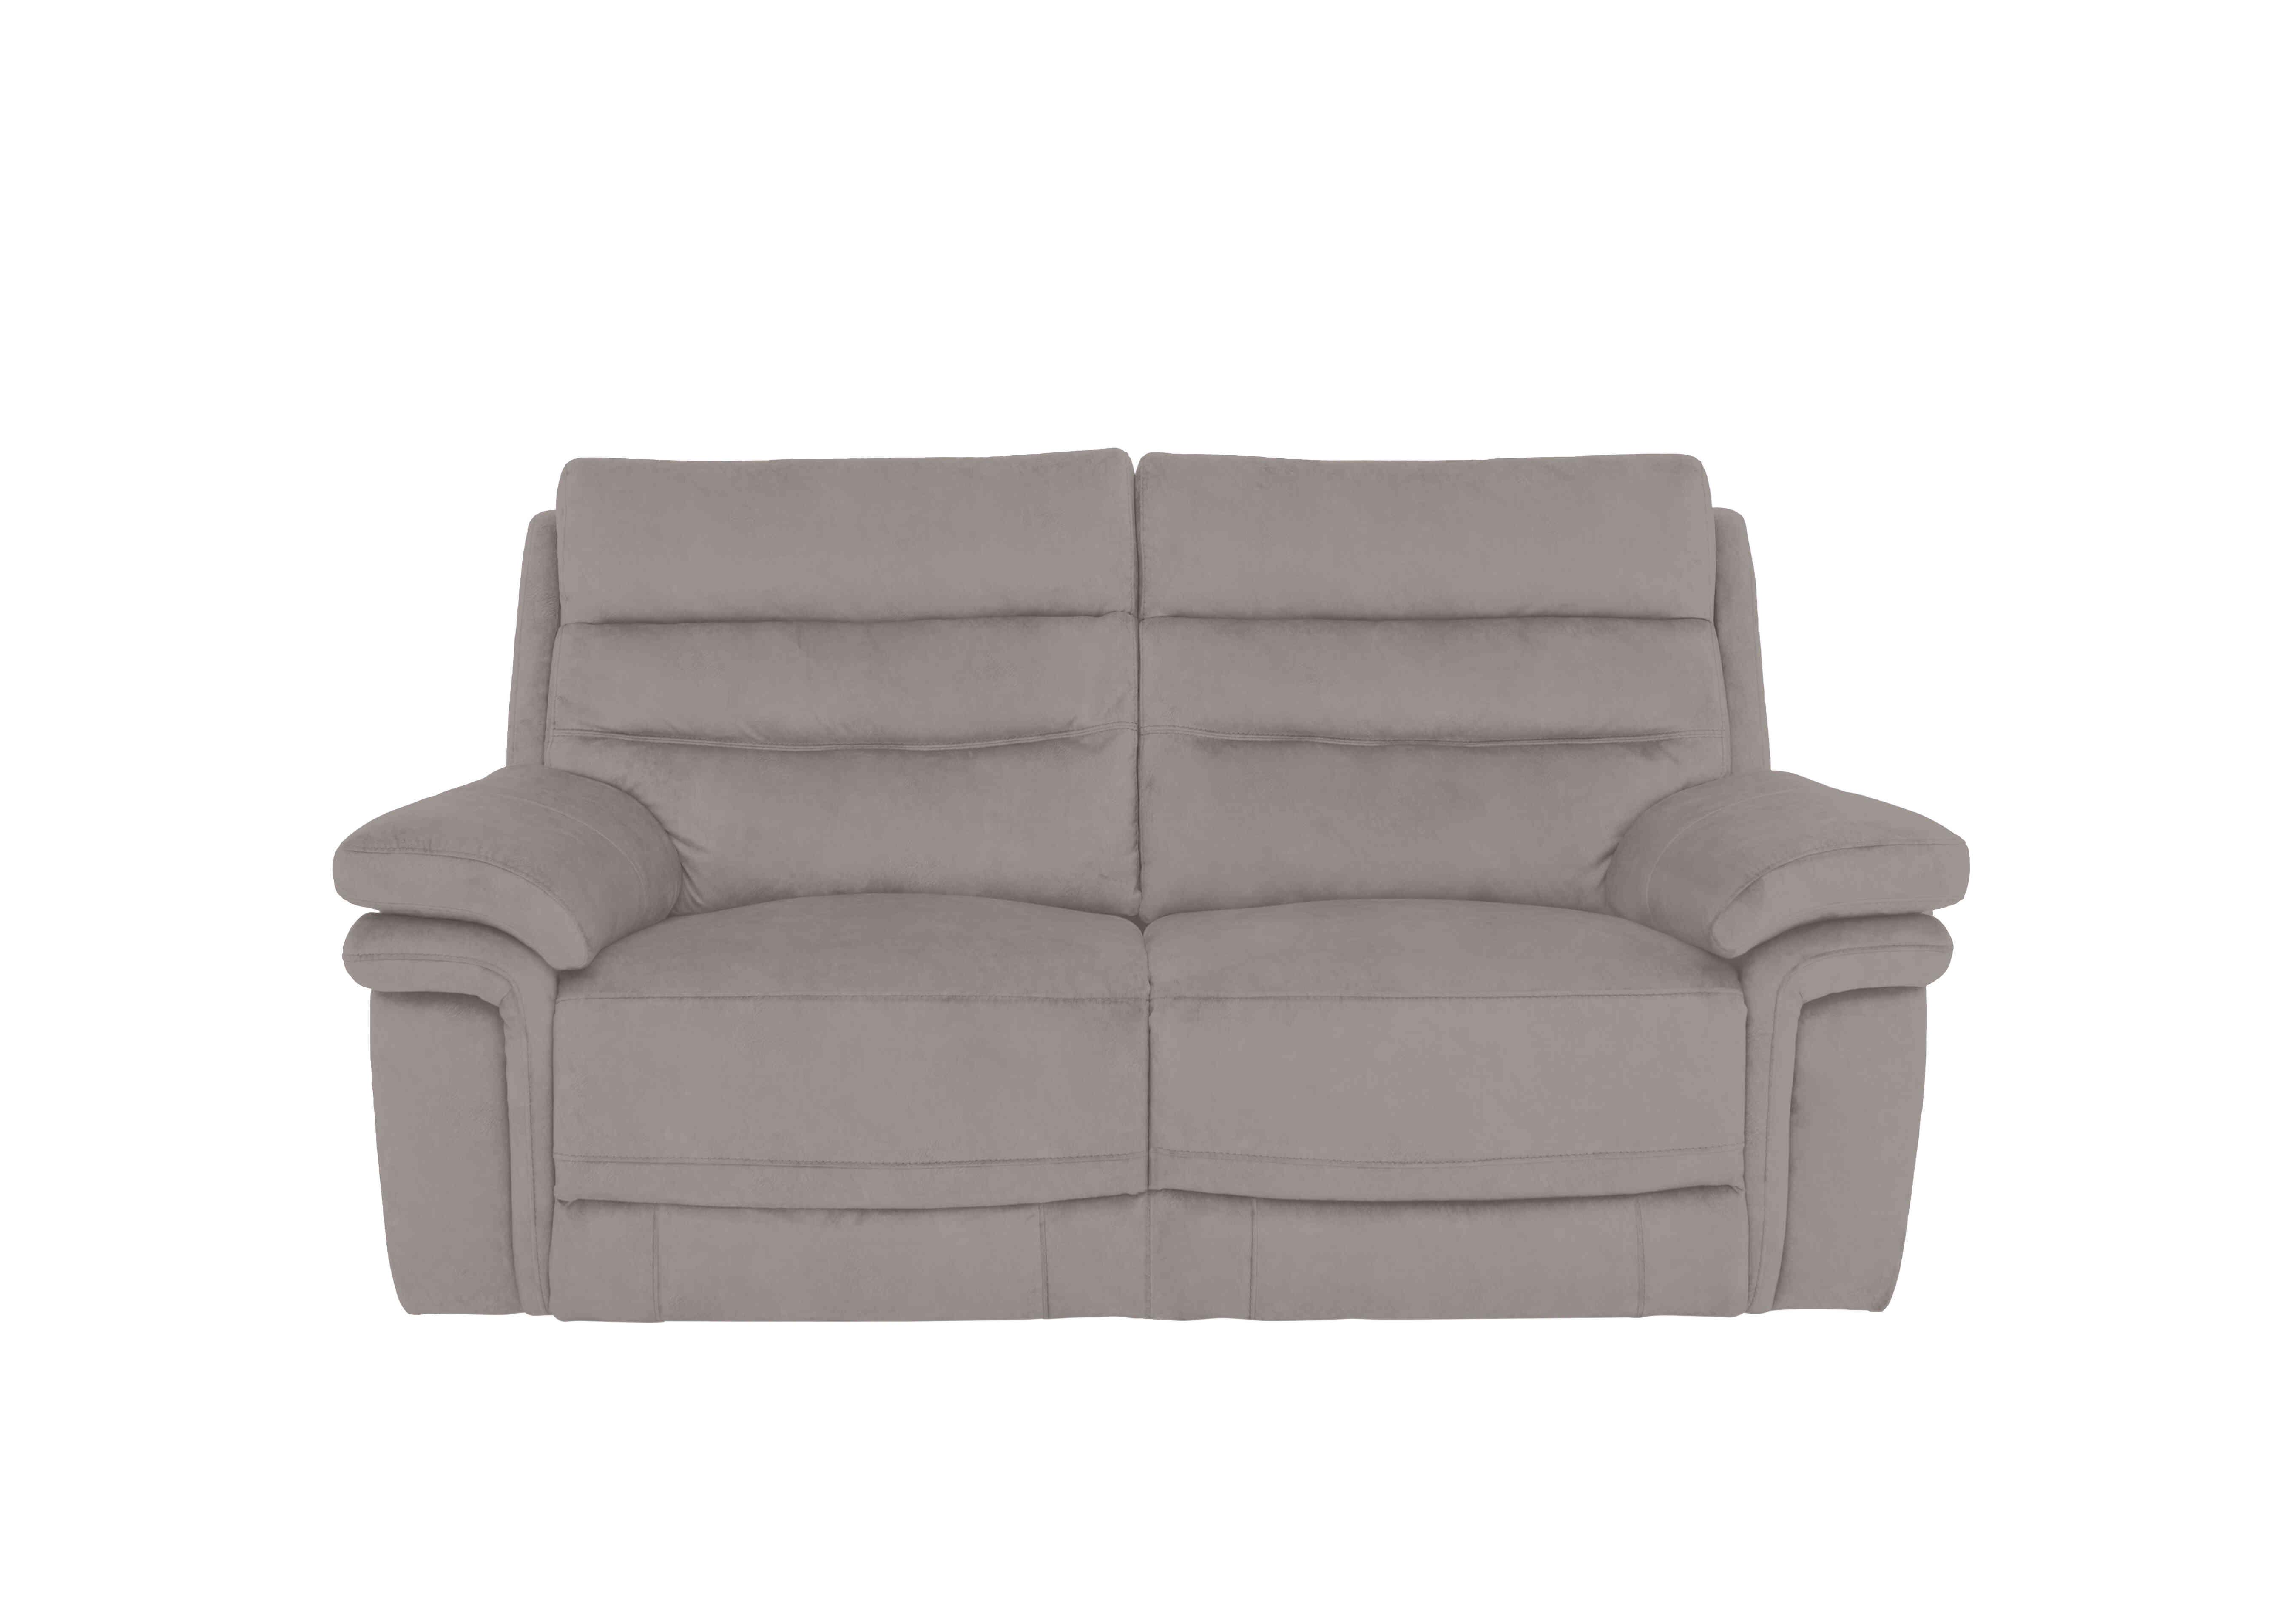 Berlin 2 Seater Fabric Sofa in Velvet Sand Vv-0303 on Furniture Village